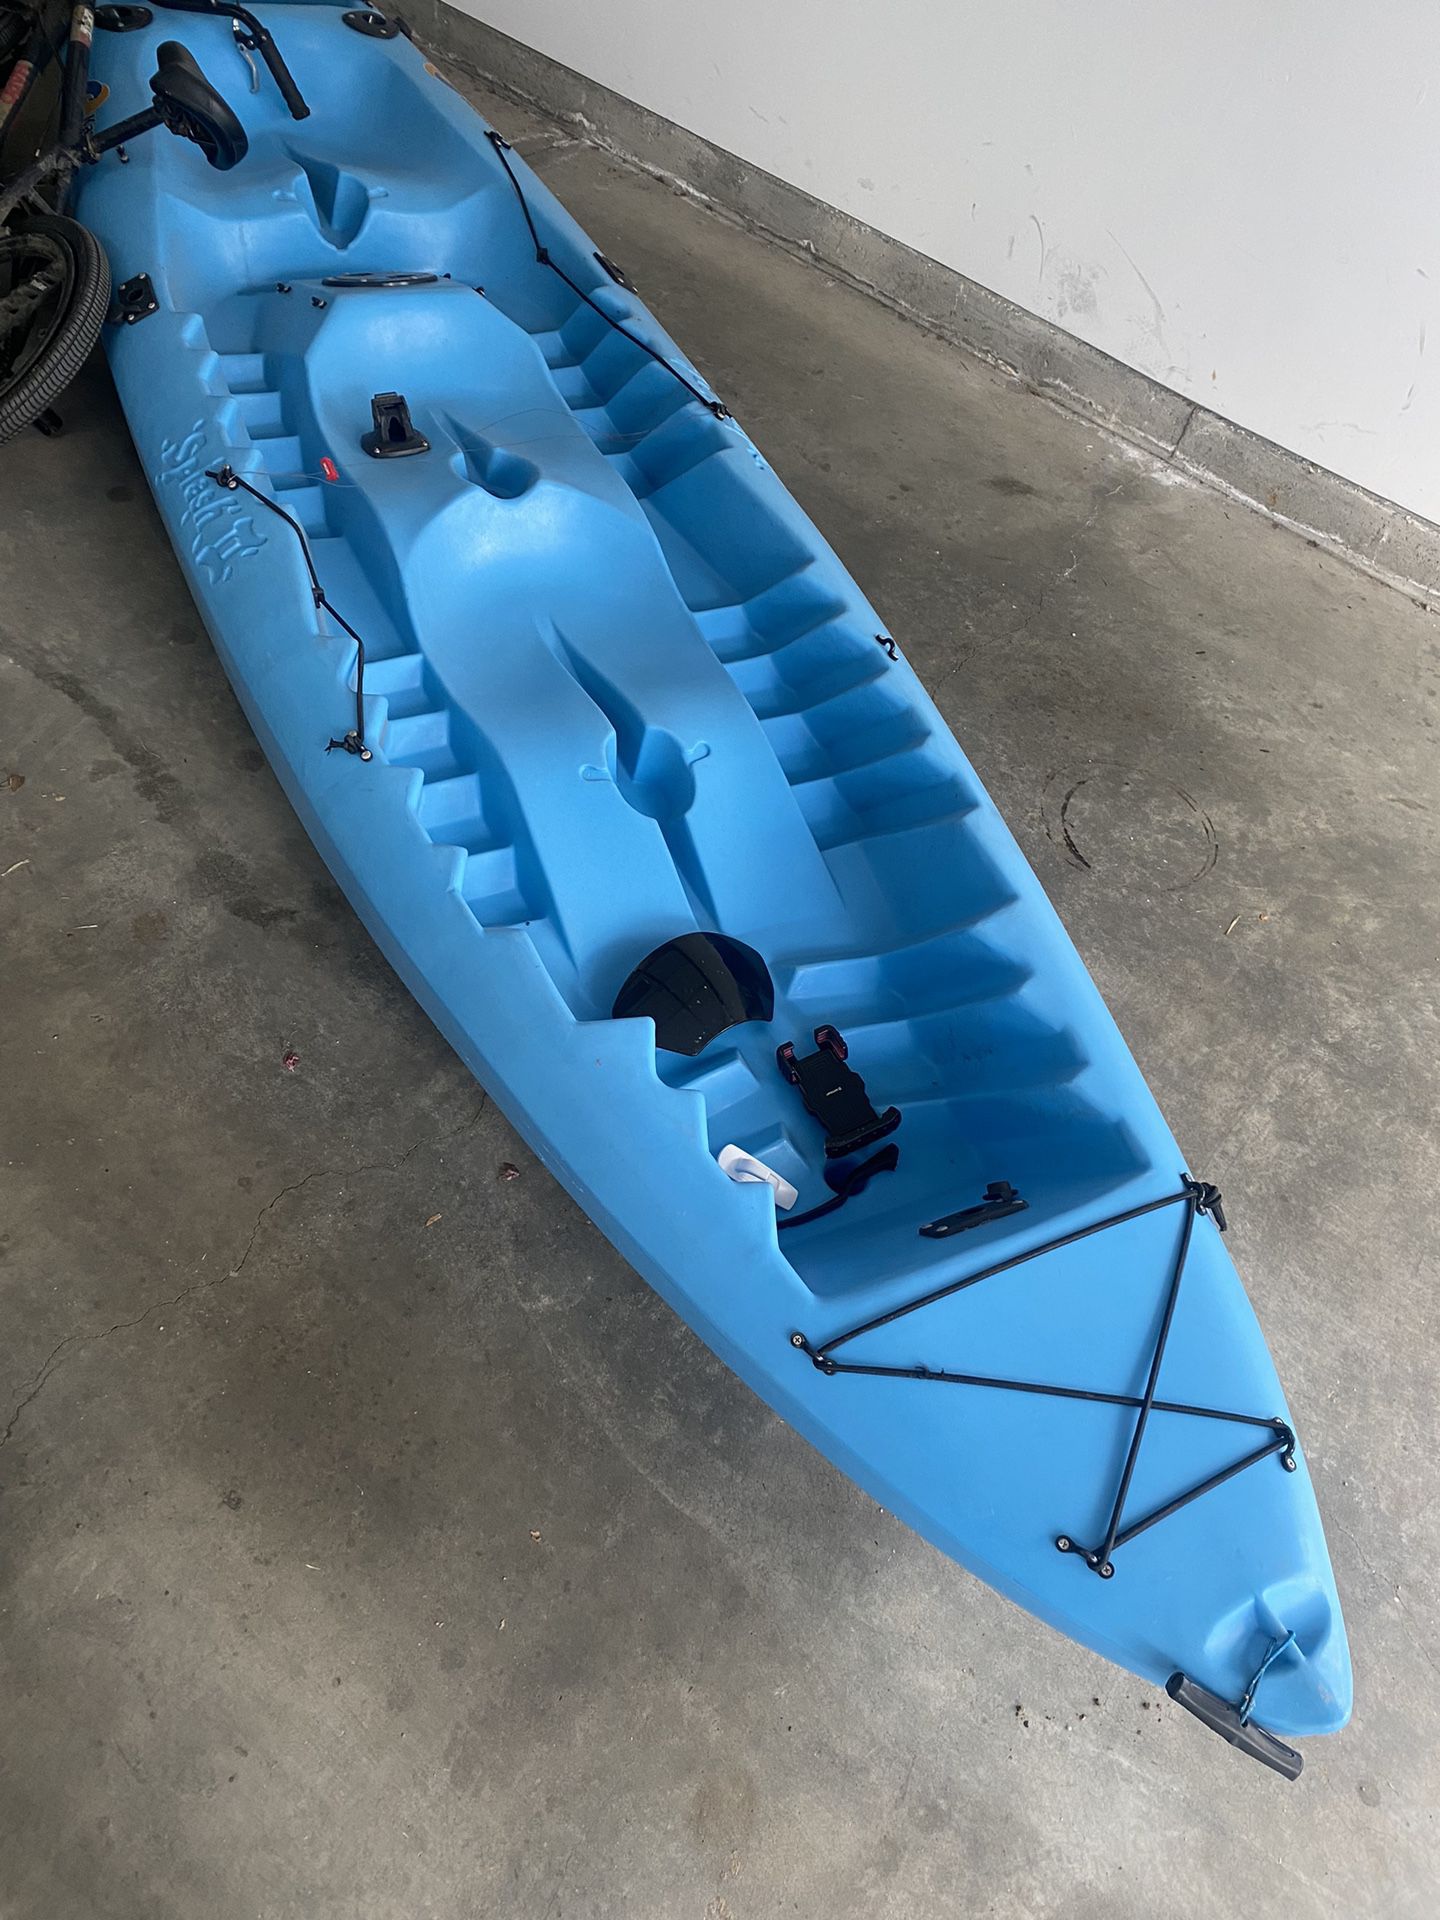 Ceesent Kayak 12ft Fishing Kayak 3 Seater 